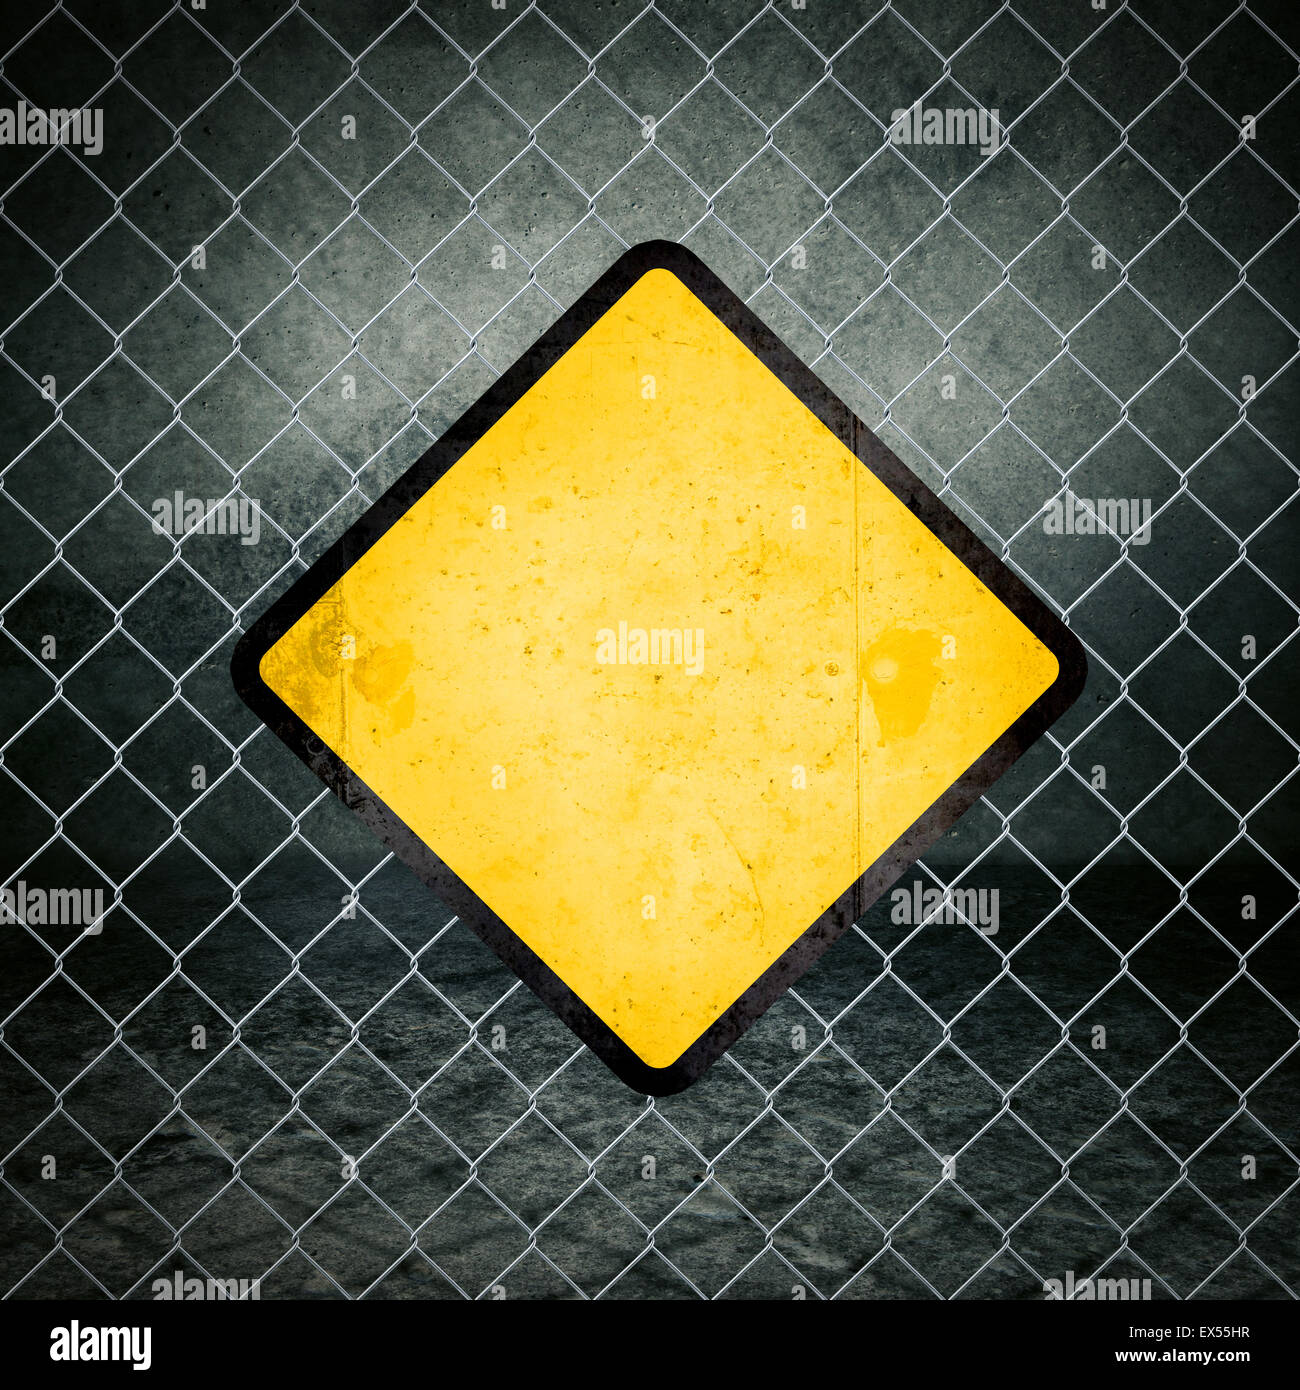 Blank Grunge simbolo giallo di avvertimento sulla recinzione ad anelli di magazzini industriali come copia di spazio per il vostro messaggio. Foto Stock